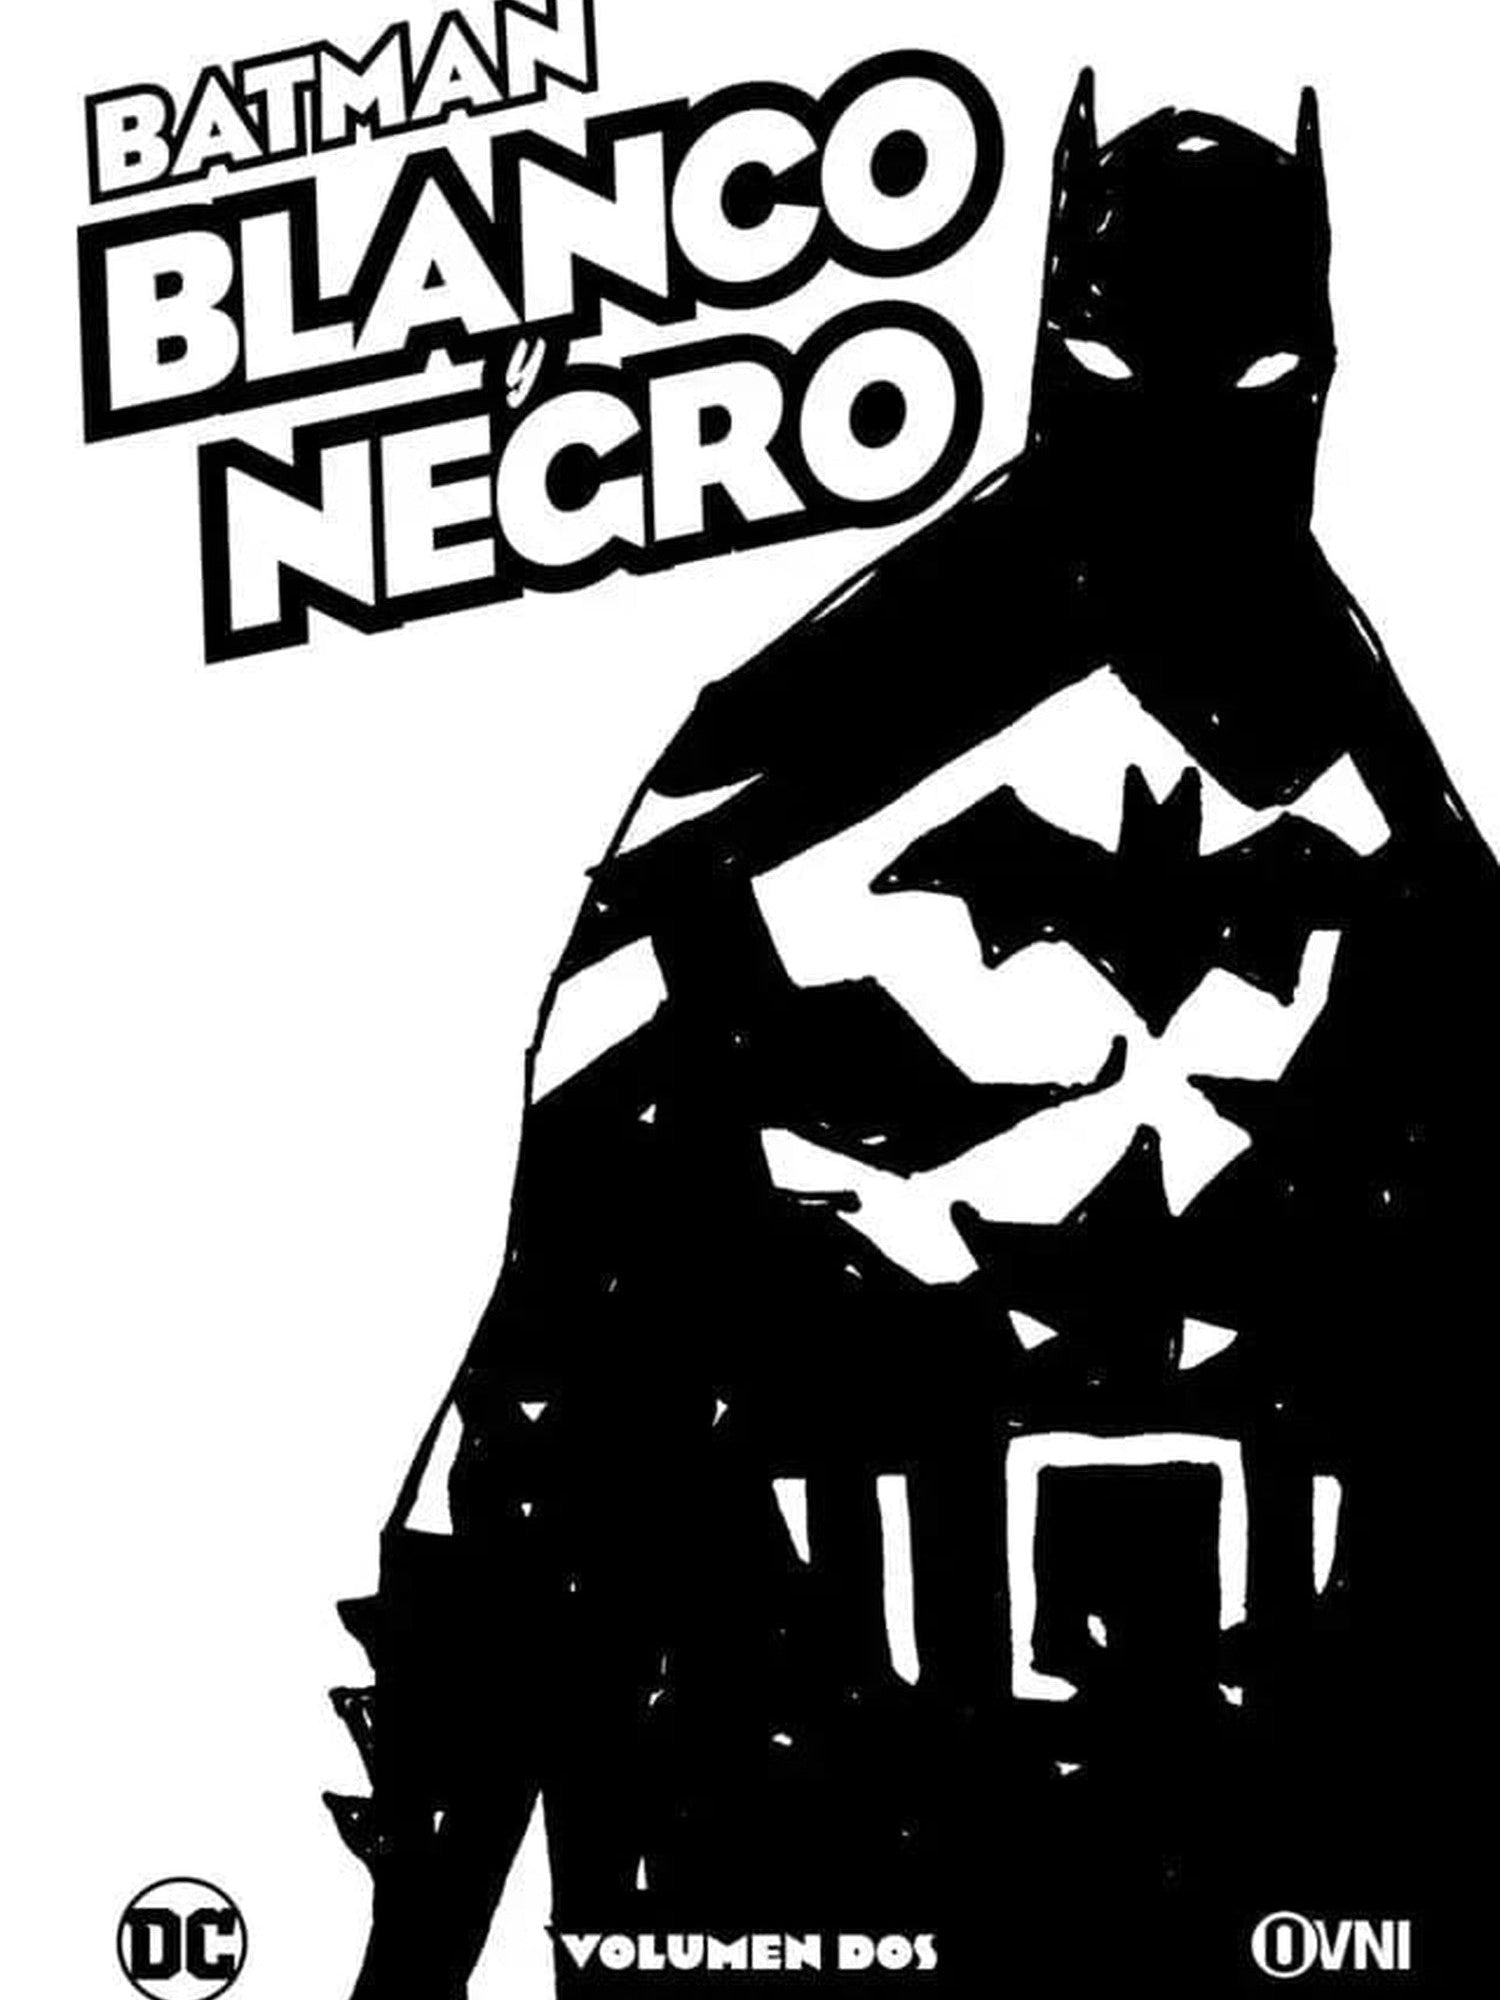 Batman: Blanco y Negro Vol. Dos